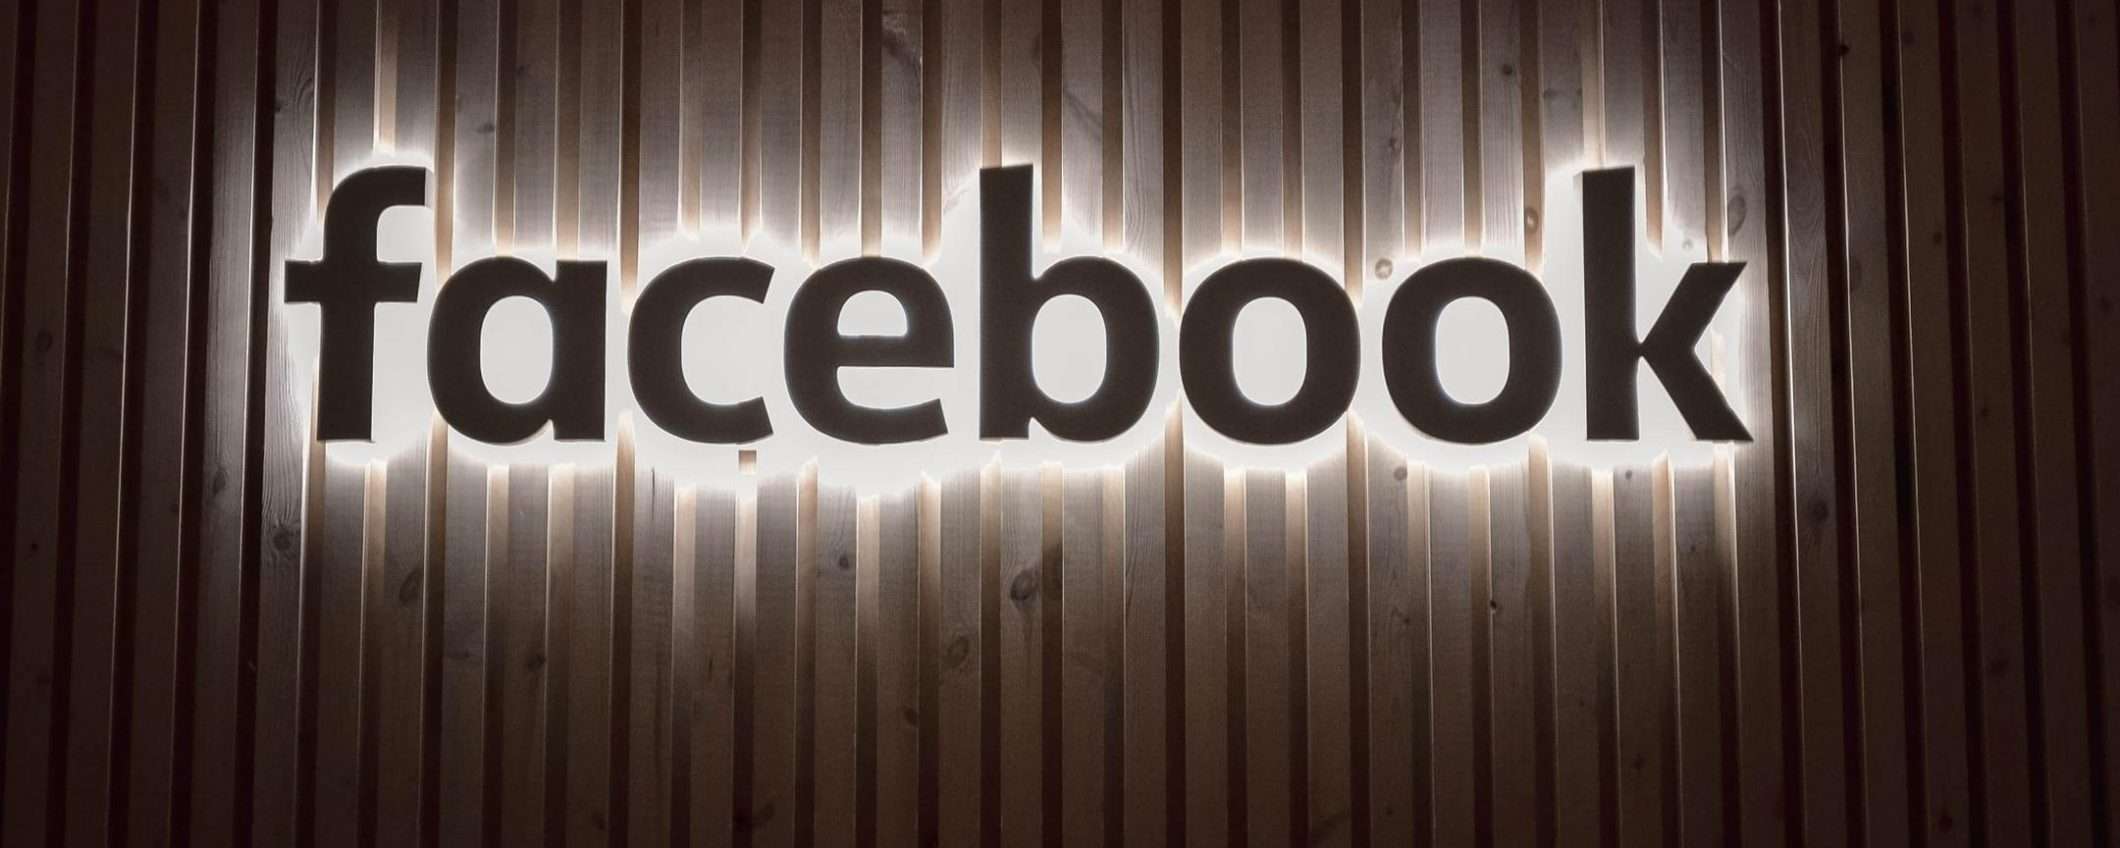 Facebook: incitamento all'odio diminuito del 50%